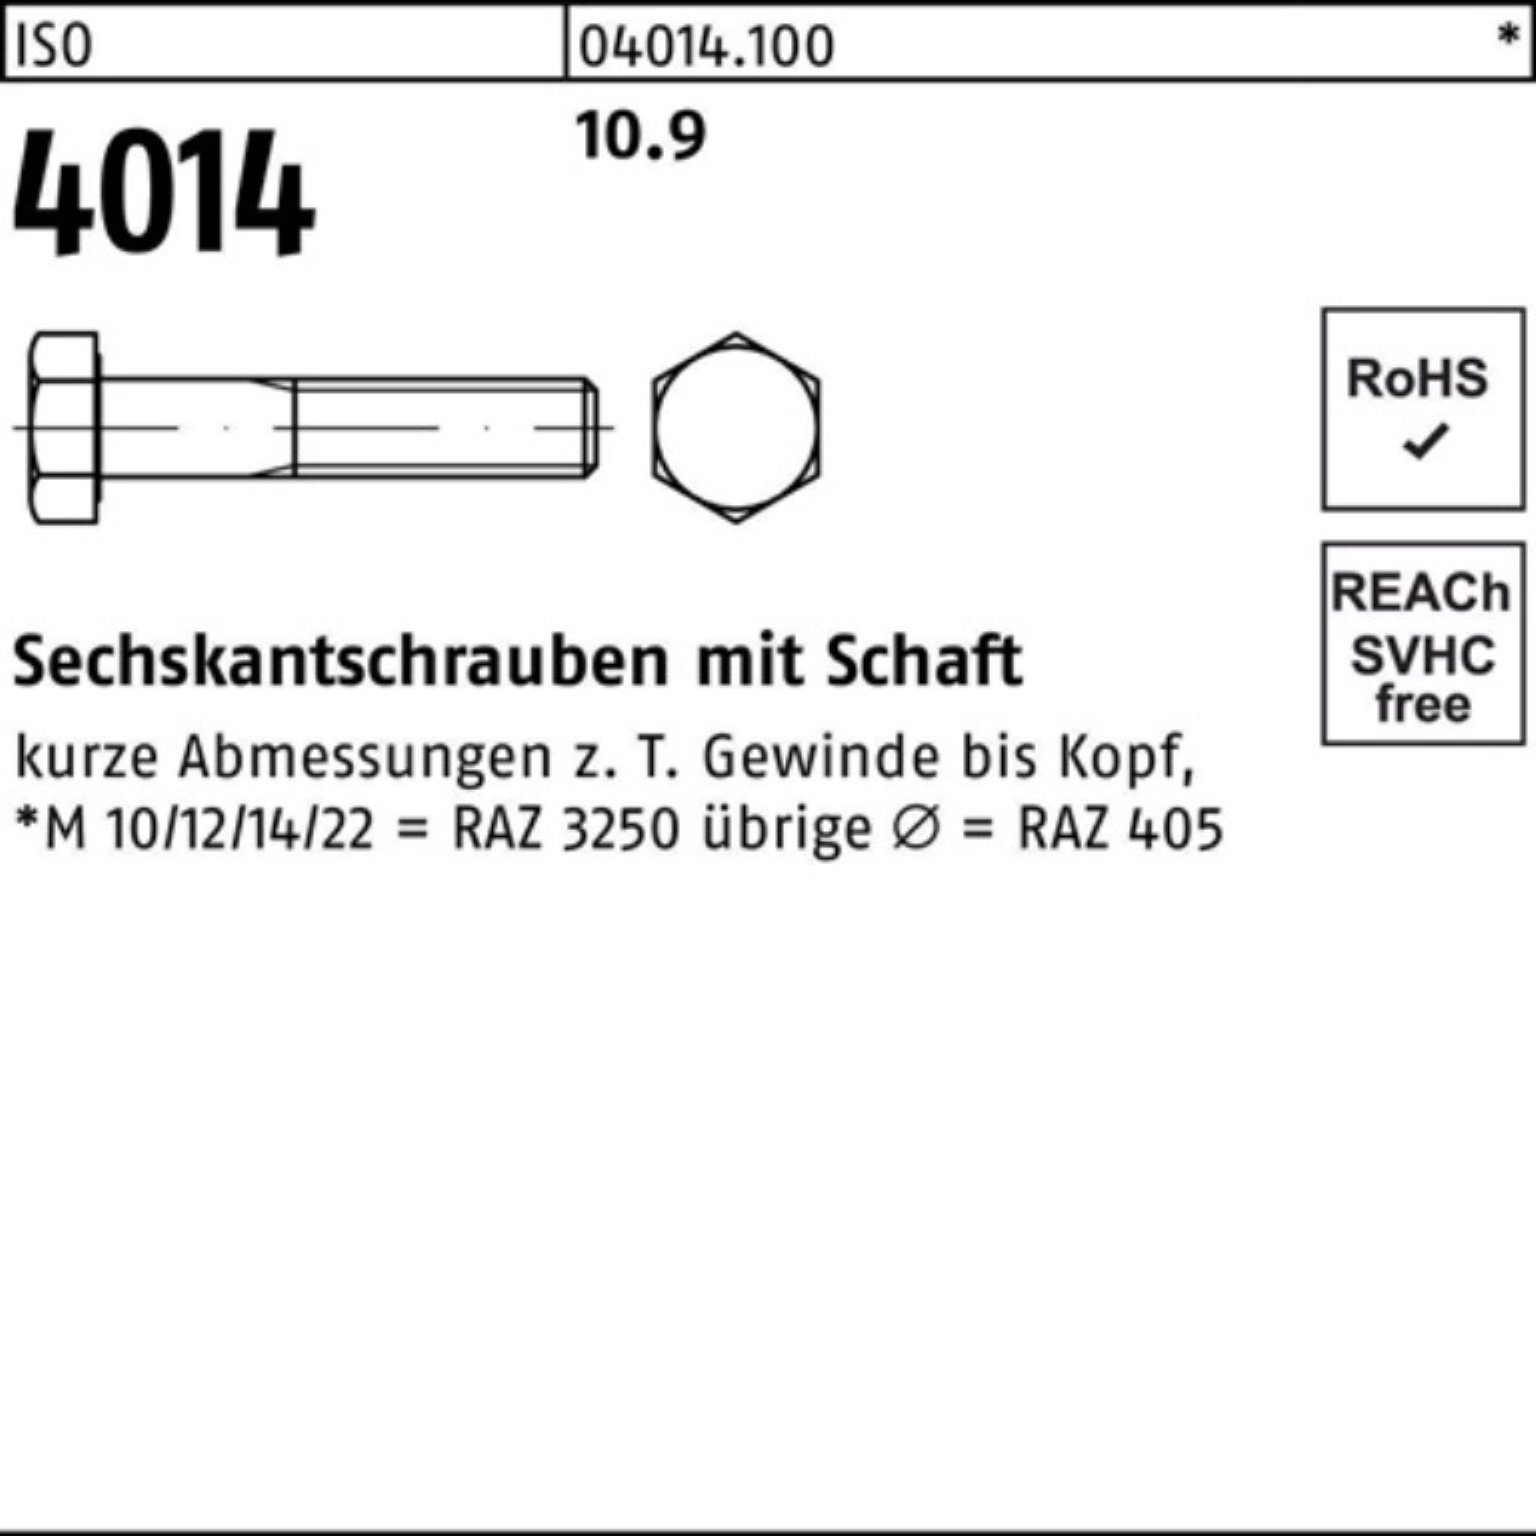 4014 110 Schaft Sechskantschraube 1 10.9 Bufab M39x Sechskantschraube Stück IS ISO Pack 100er